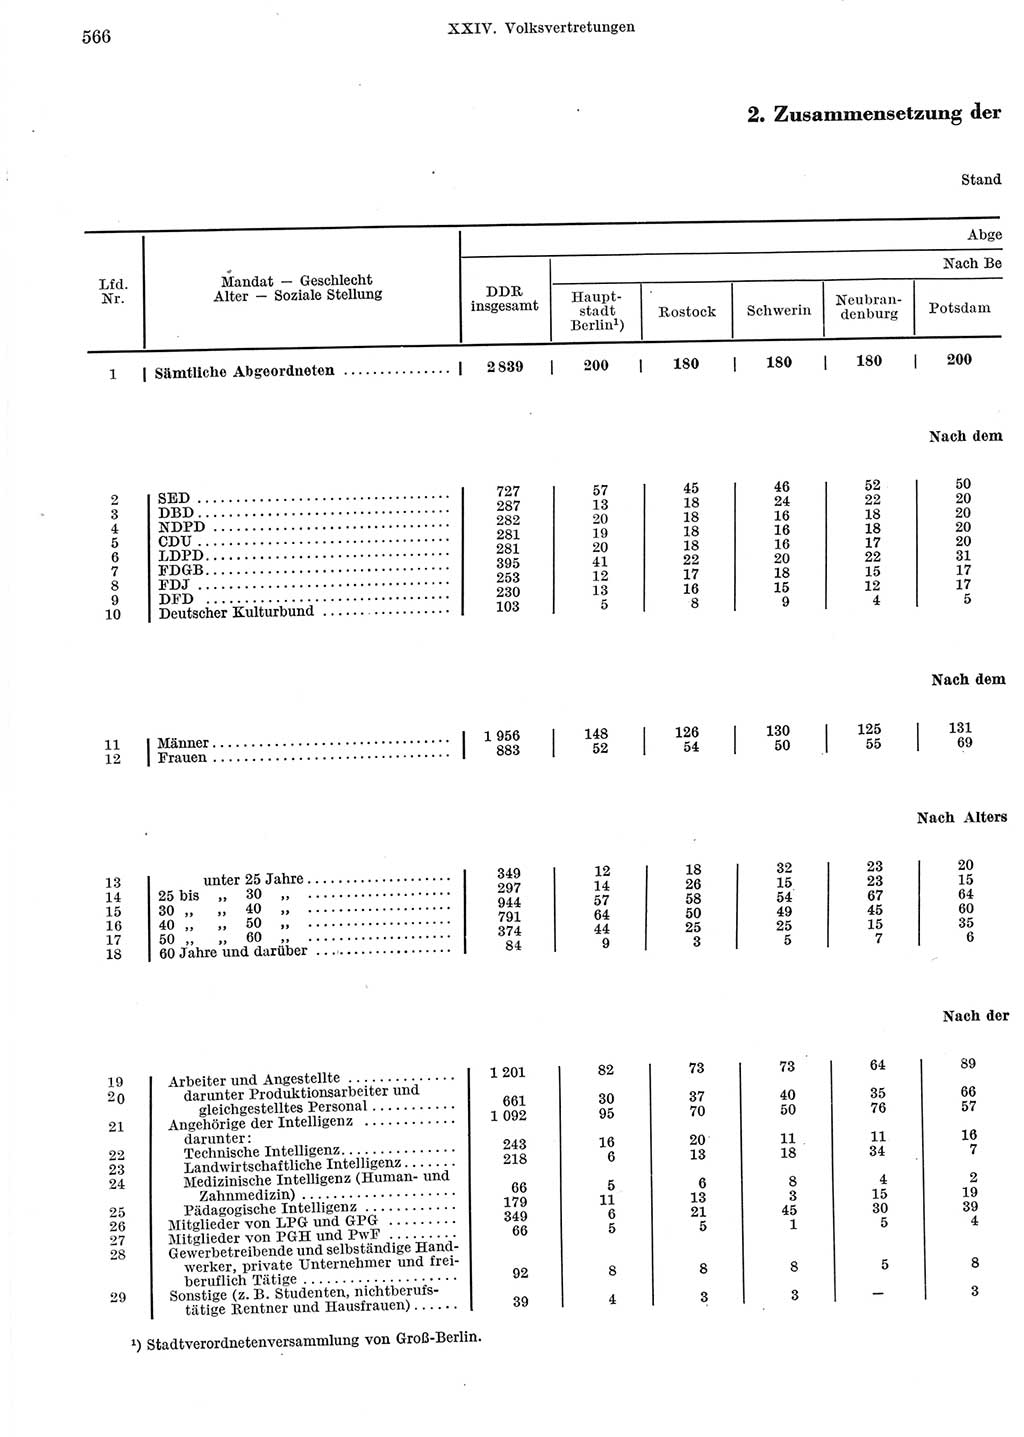 Statistisches Jahrbuch der Deutschen Demokratischen Republik (DDR) 1965, Seite 566 (Stat. Jb. DDR 1965, S. 566)